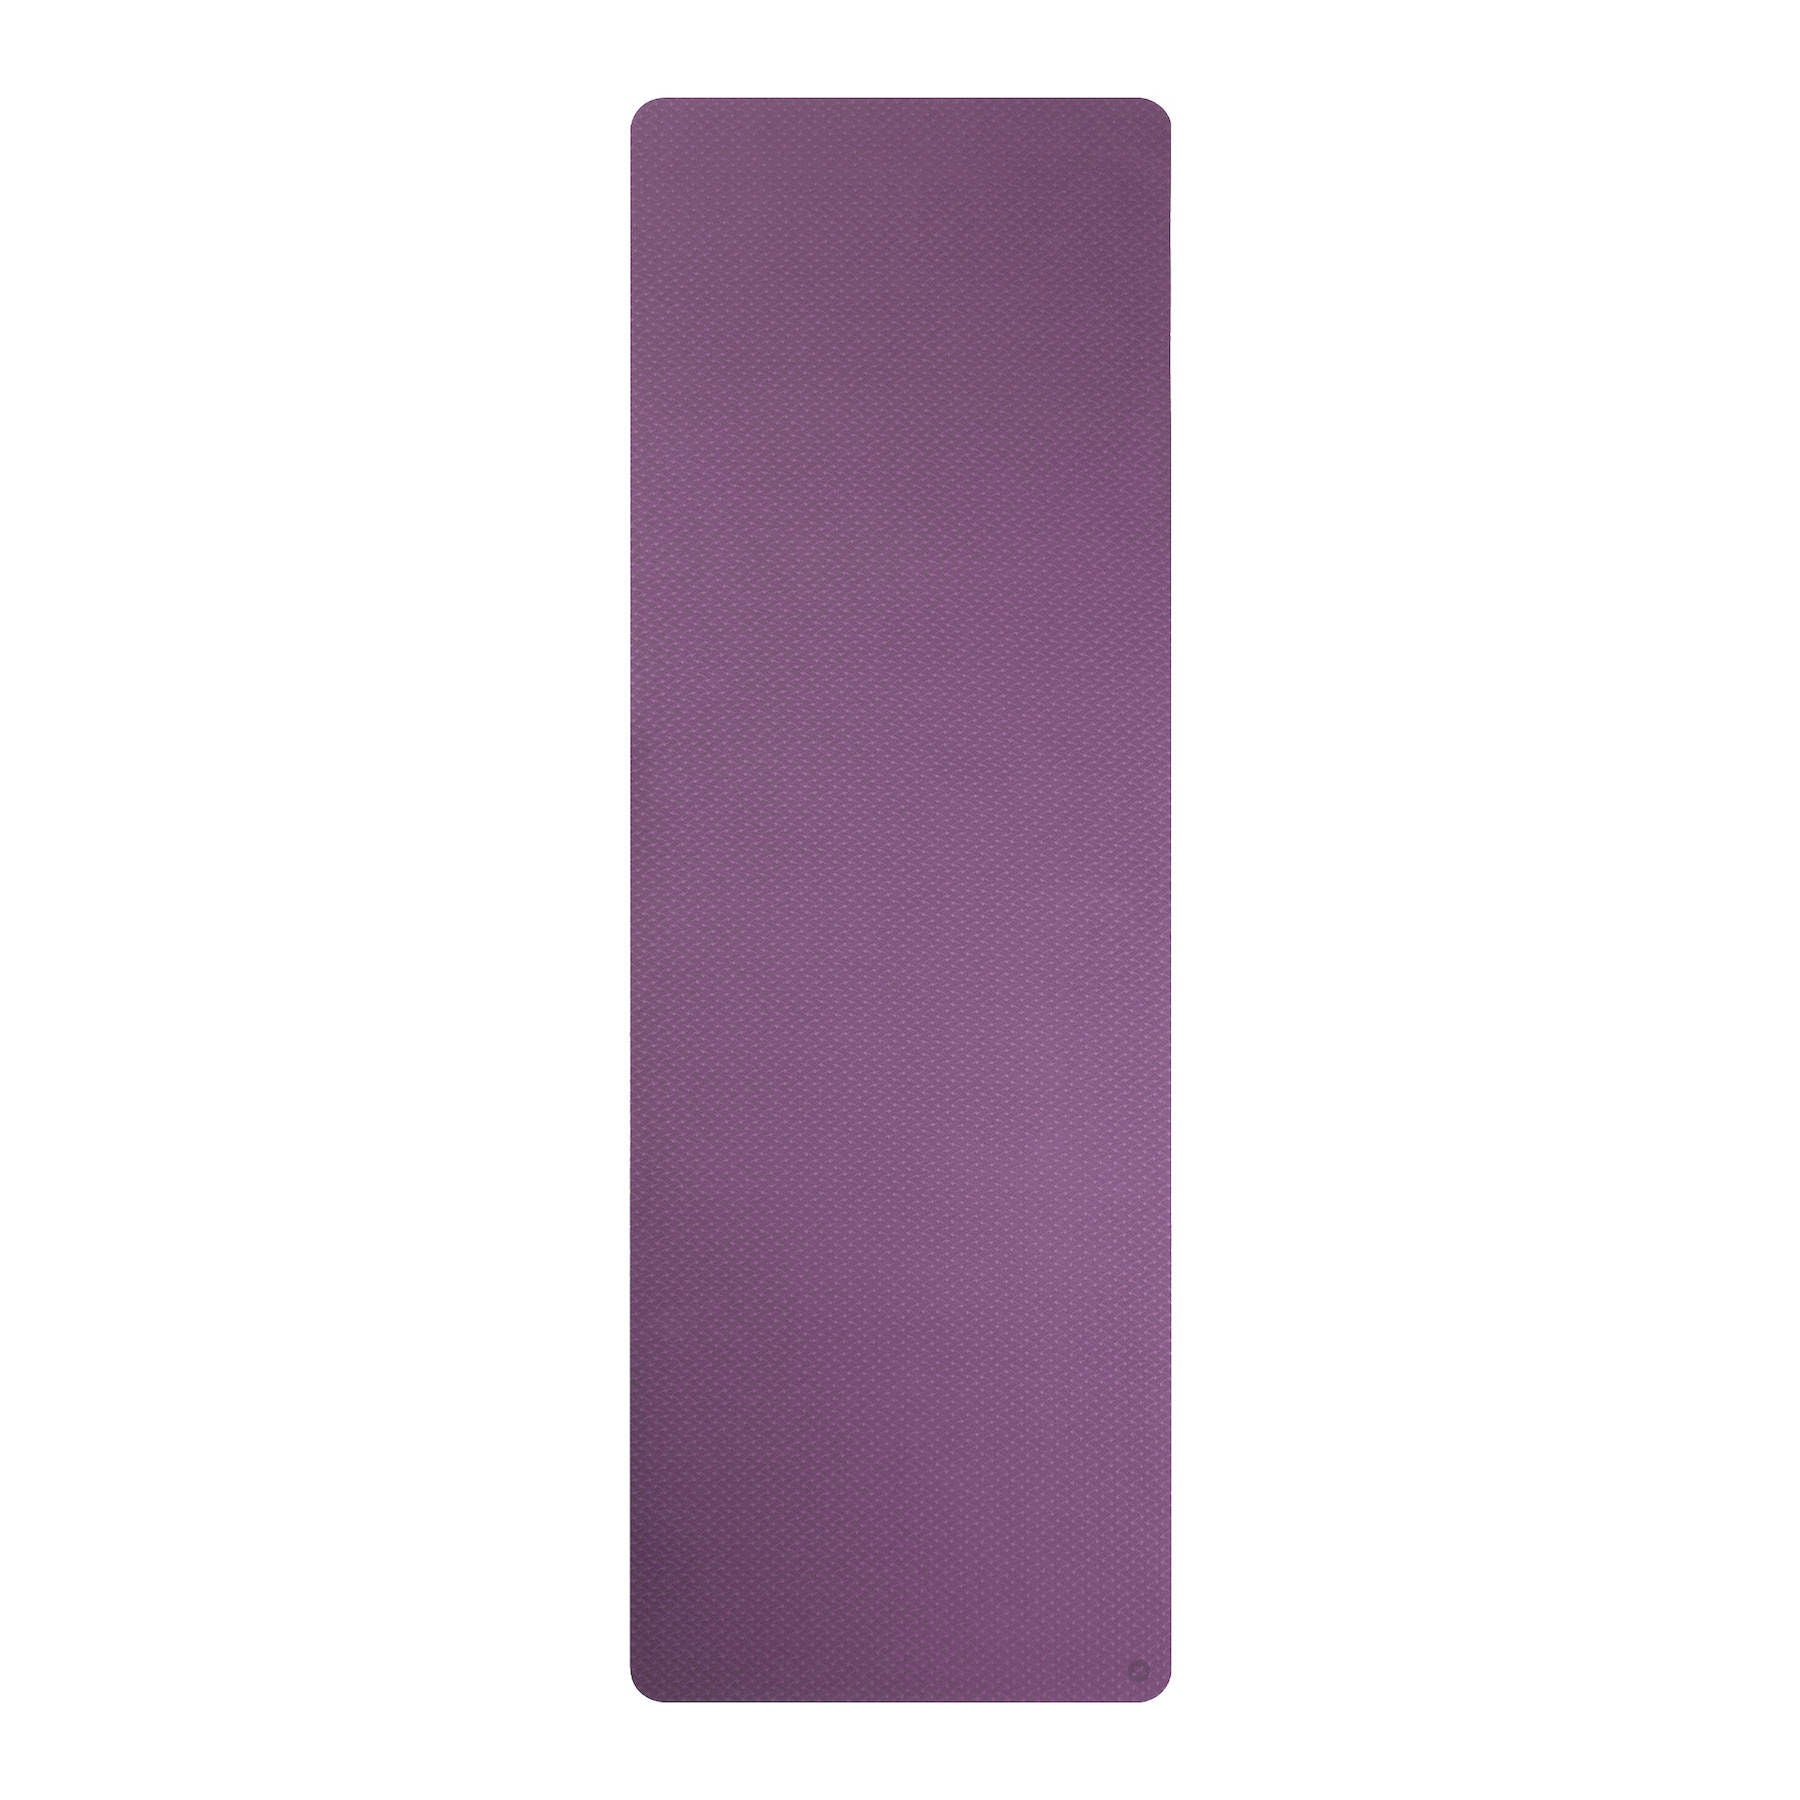 Tappetino da yoga in TPE viola, extra leggero, senza PVC, ecologico, spessore 6mm